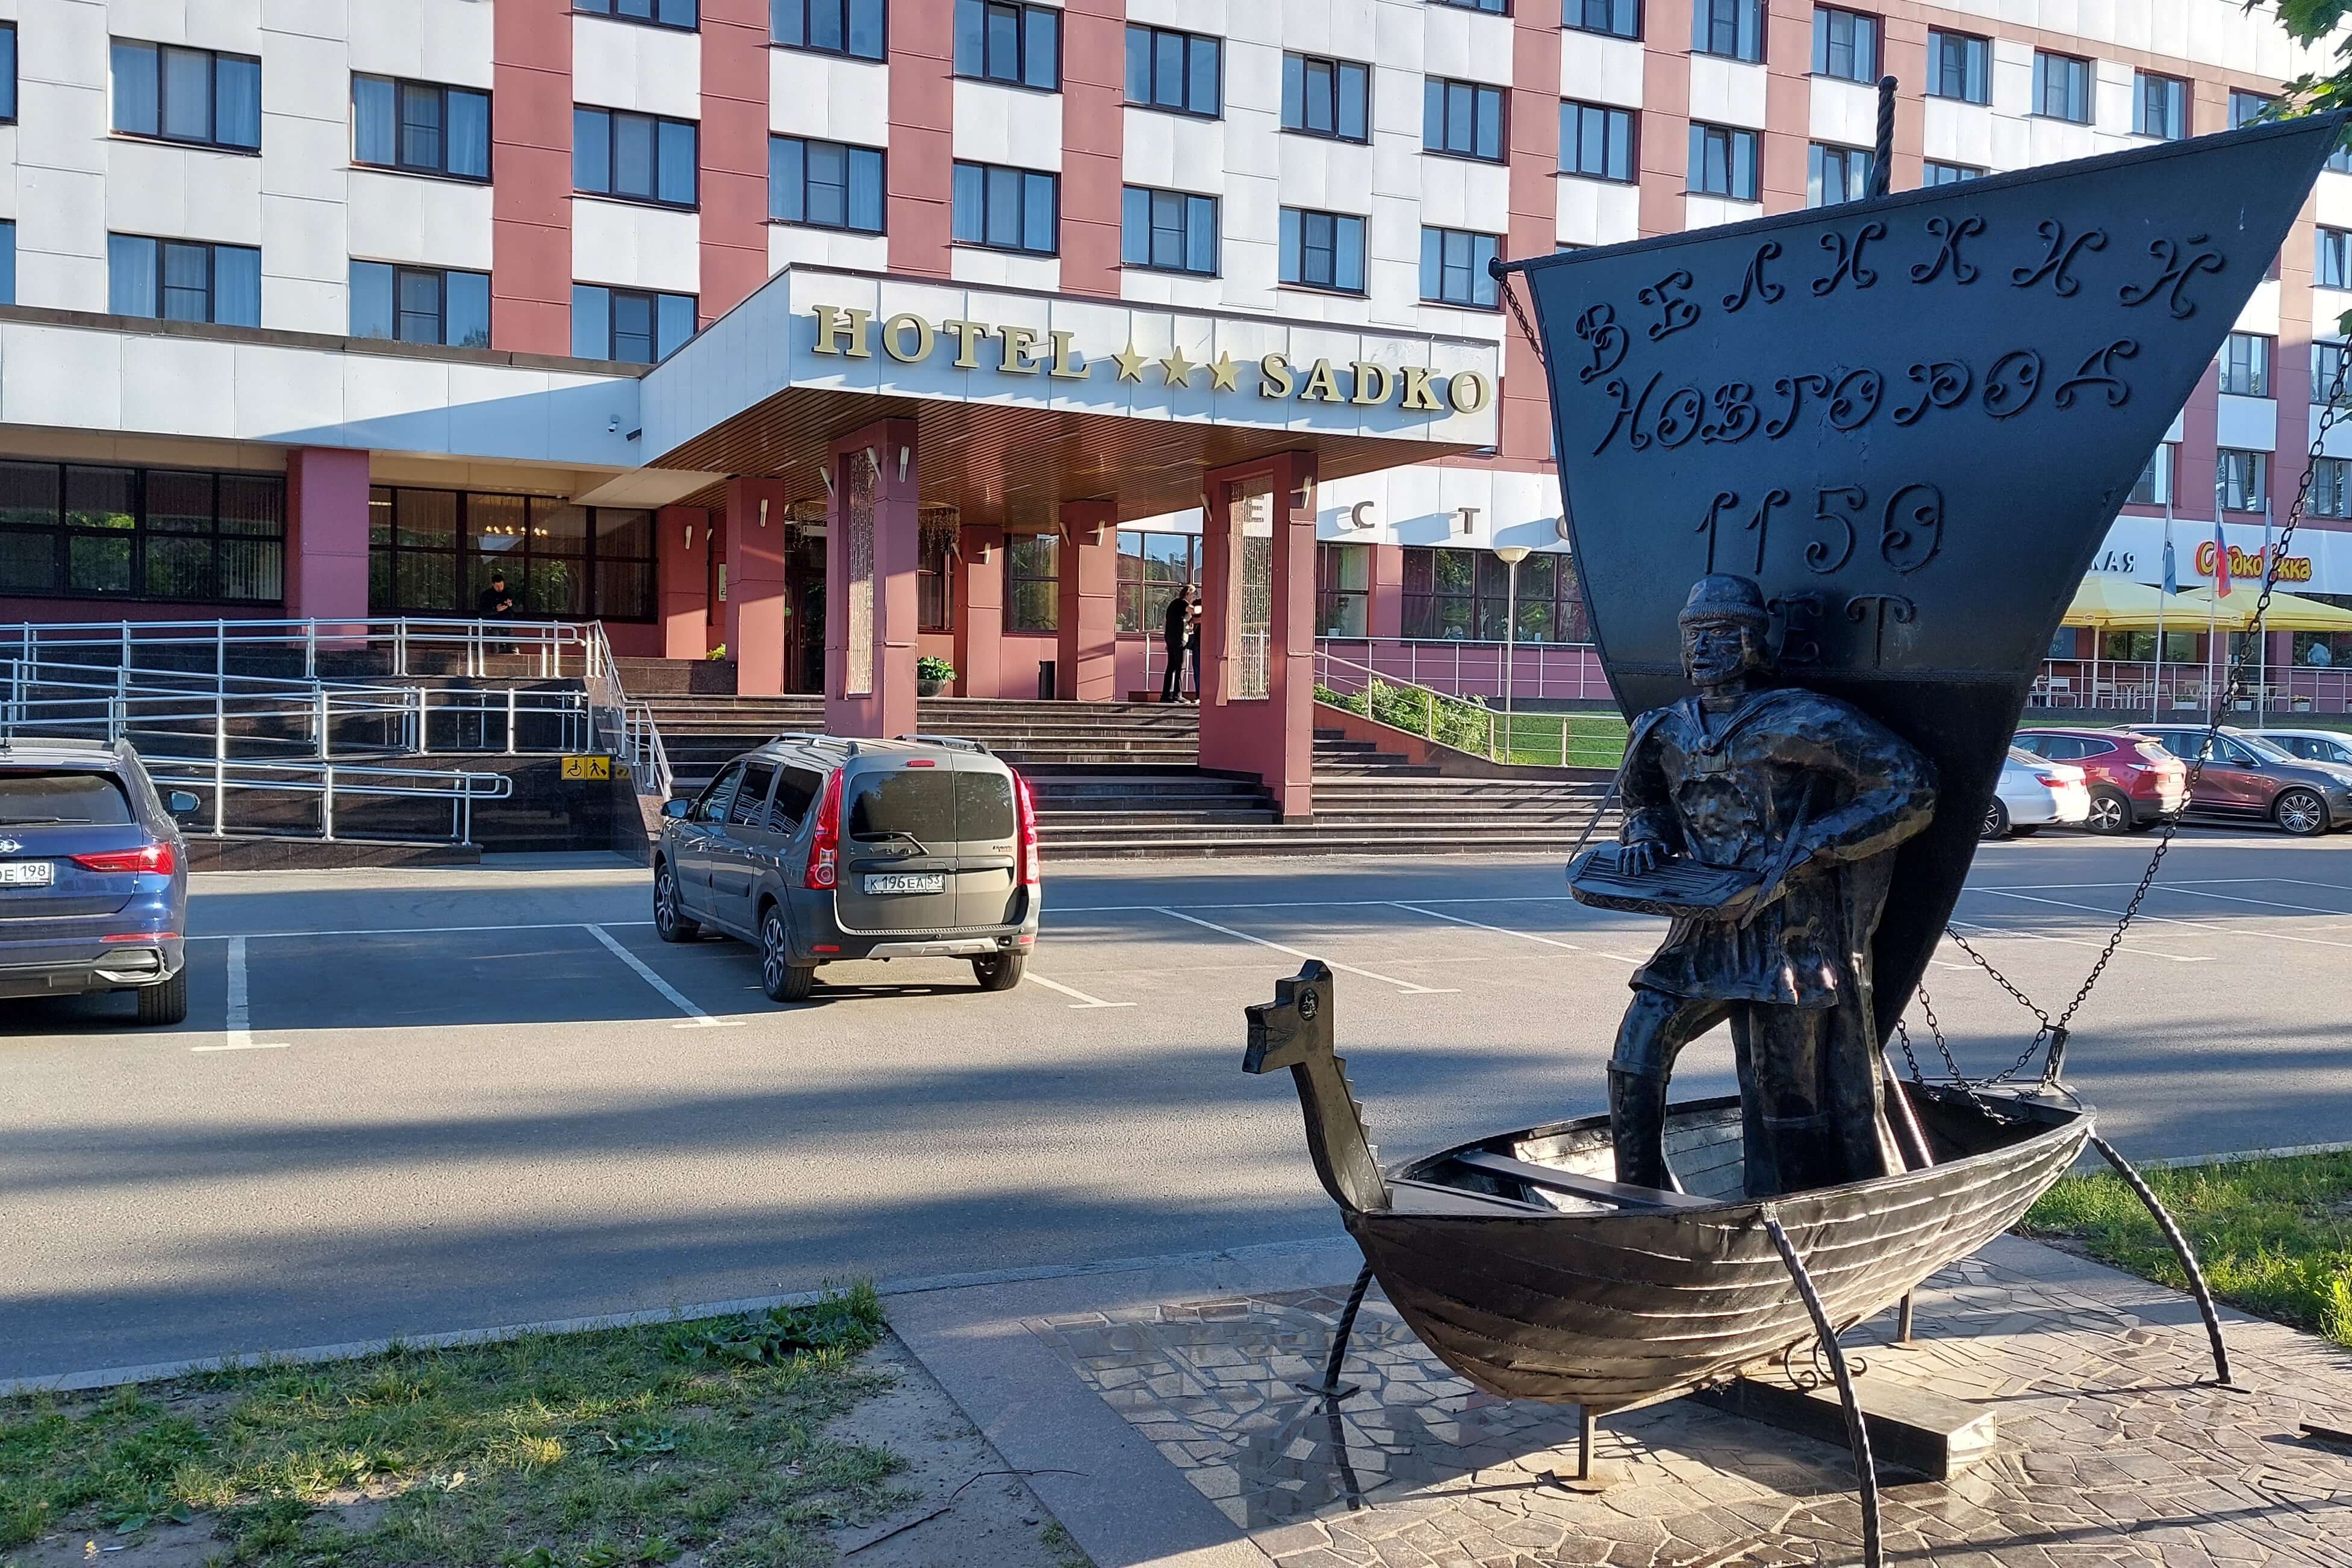 Перед отелем установлена скульптура: Великий Новгород 1150 лет.